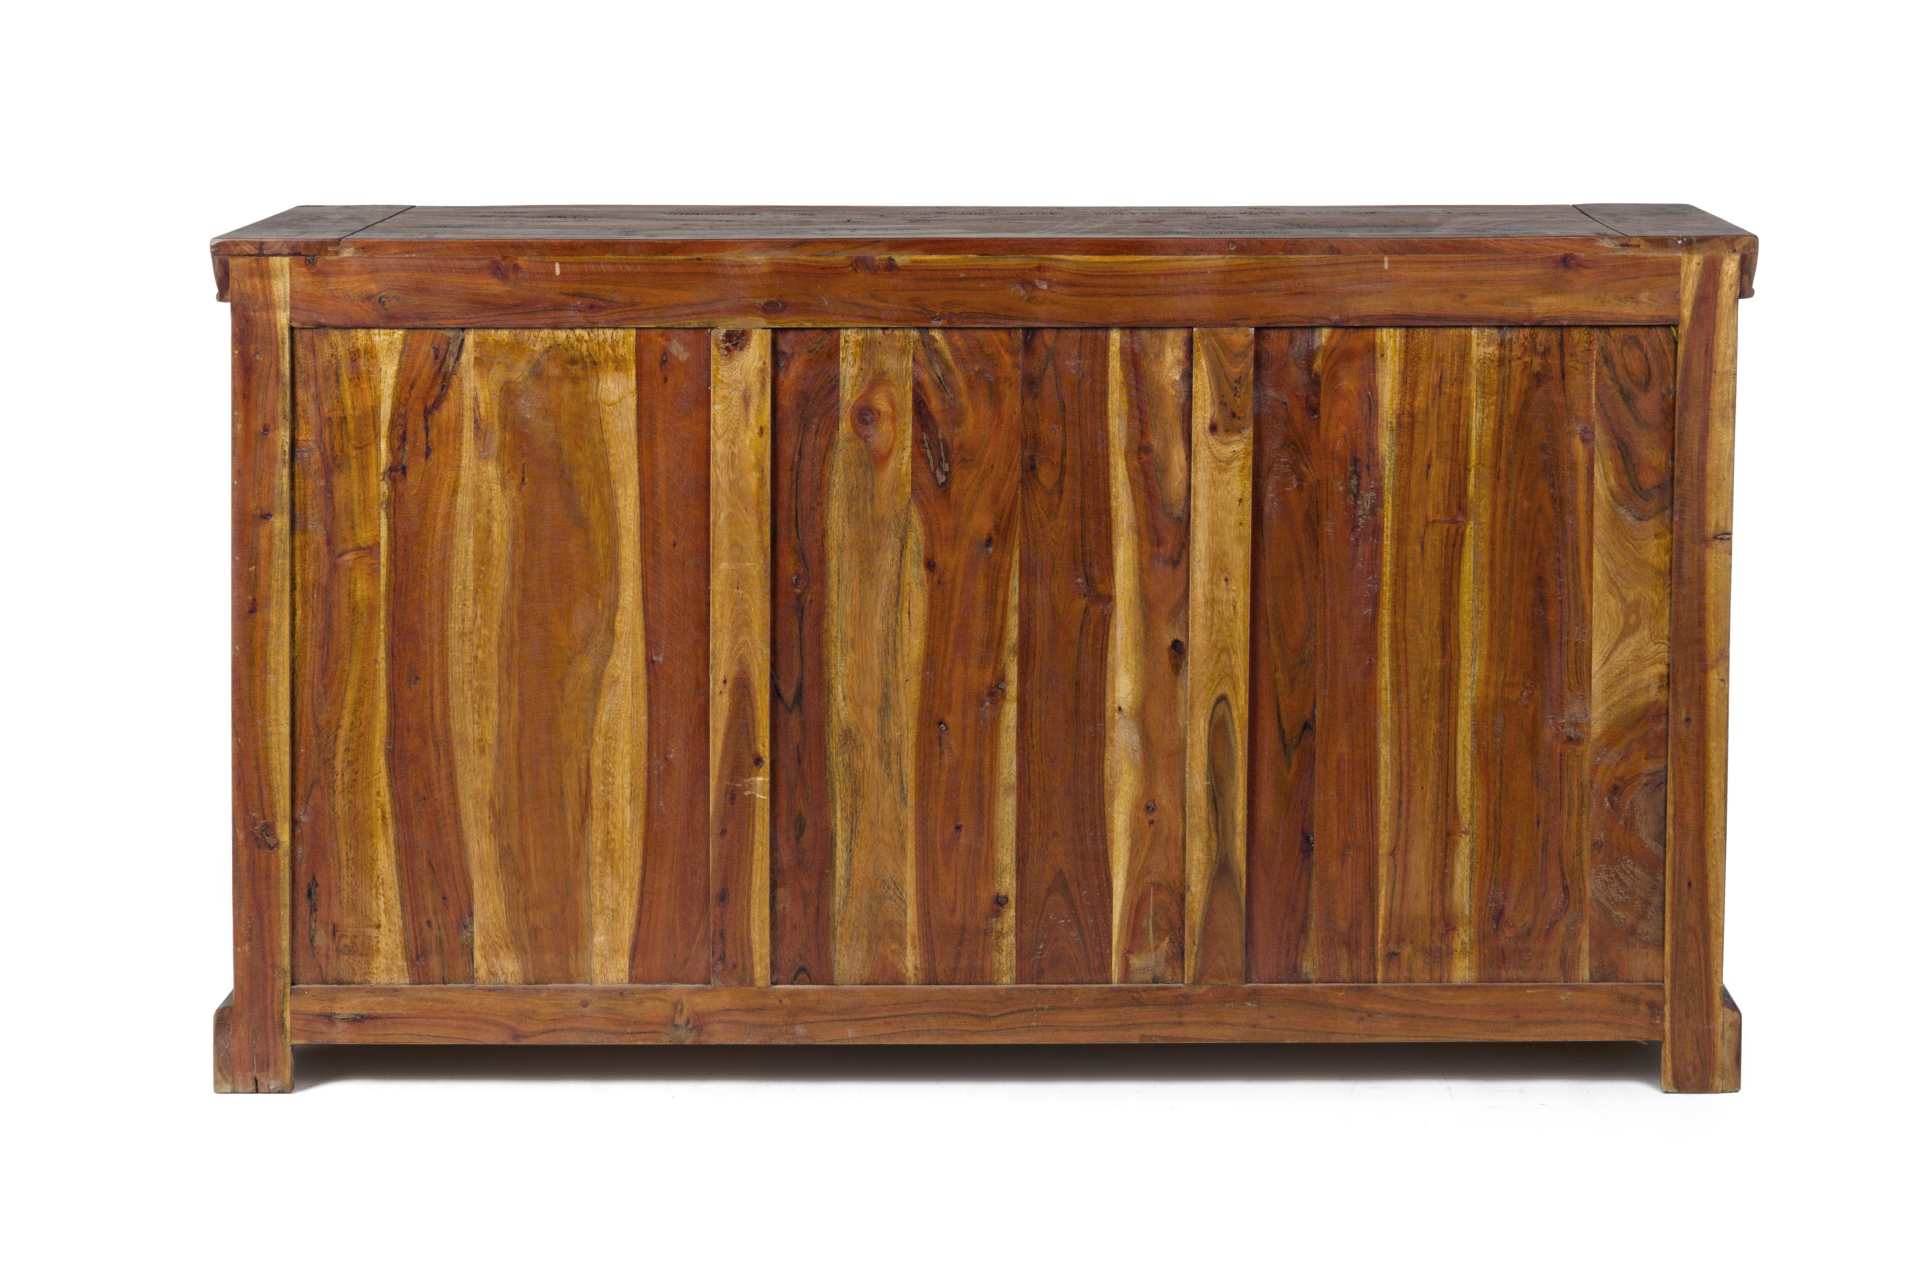 Das Sideboard Chateaux überzeugt mit seinem klassischen Design. Gefertigt wurde es aus Akazien-Holz, welches einen natürlichen Farbton besitzt. Das Gestell ist auch aus Akazien-Holz. Das Sideboard verfügt über zwei Türen und vier Schubladen. Die Breite be